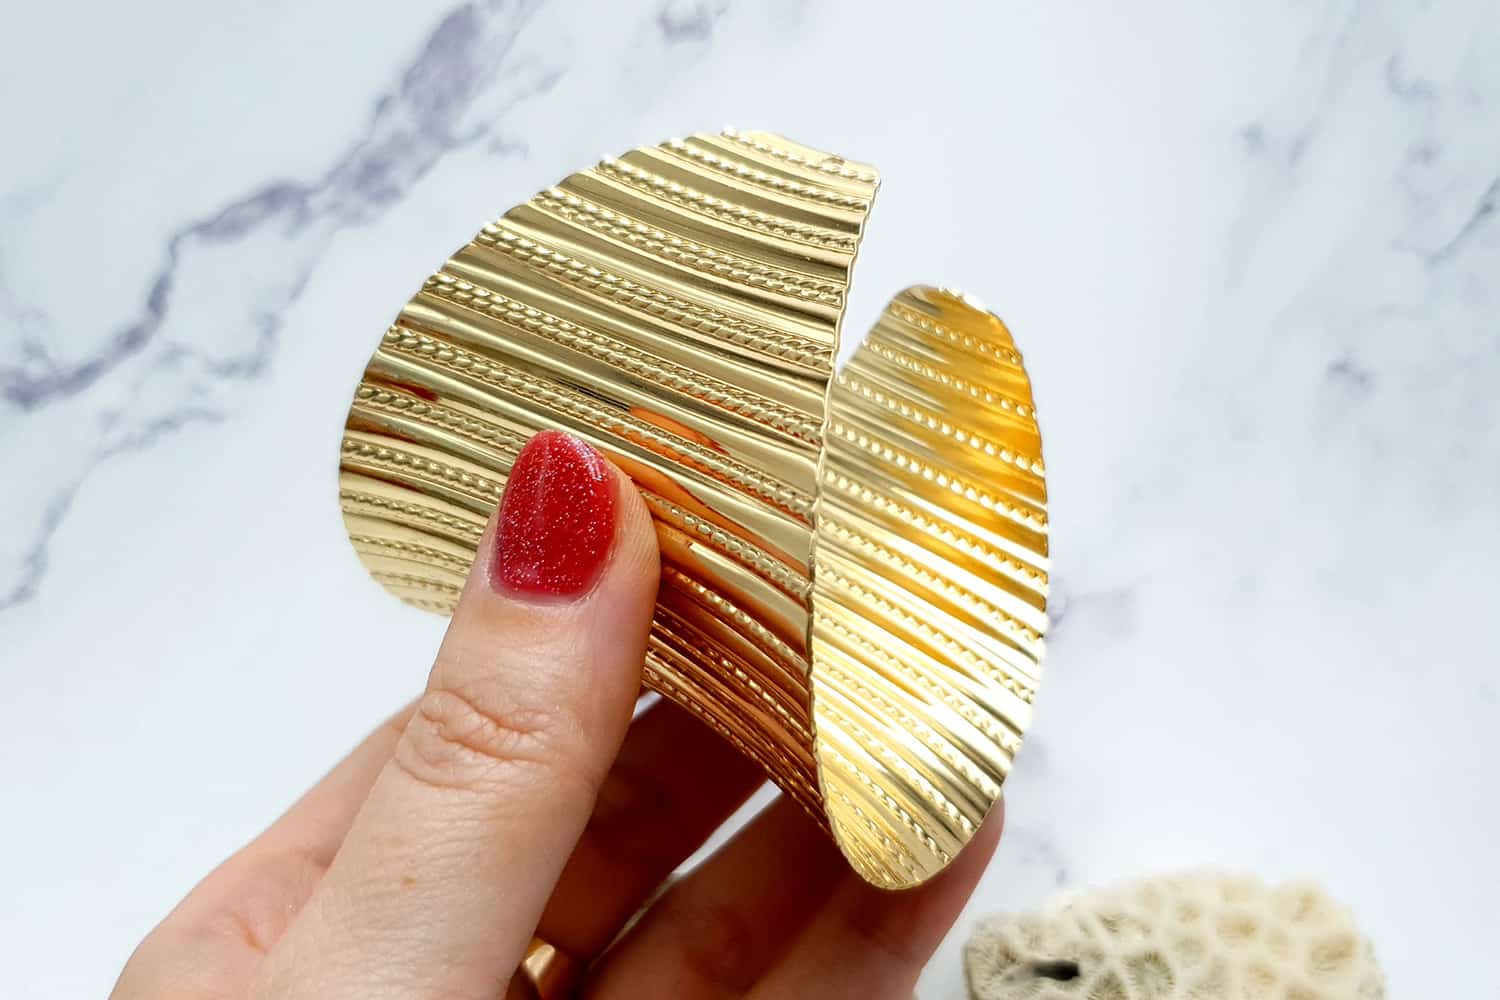 Bracelet metal base stripes pattern, golden color (23406)